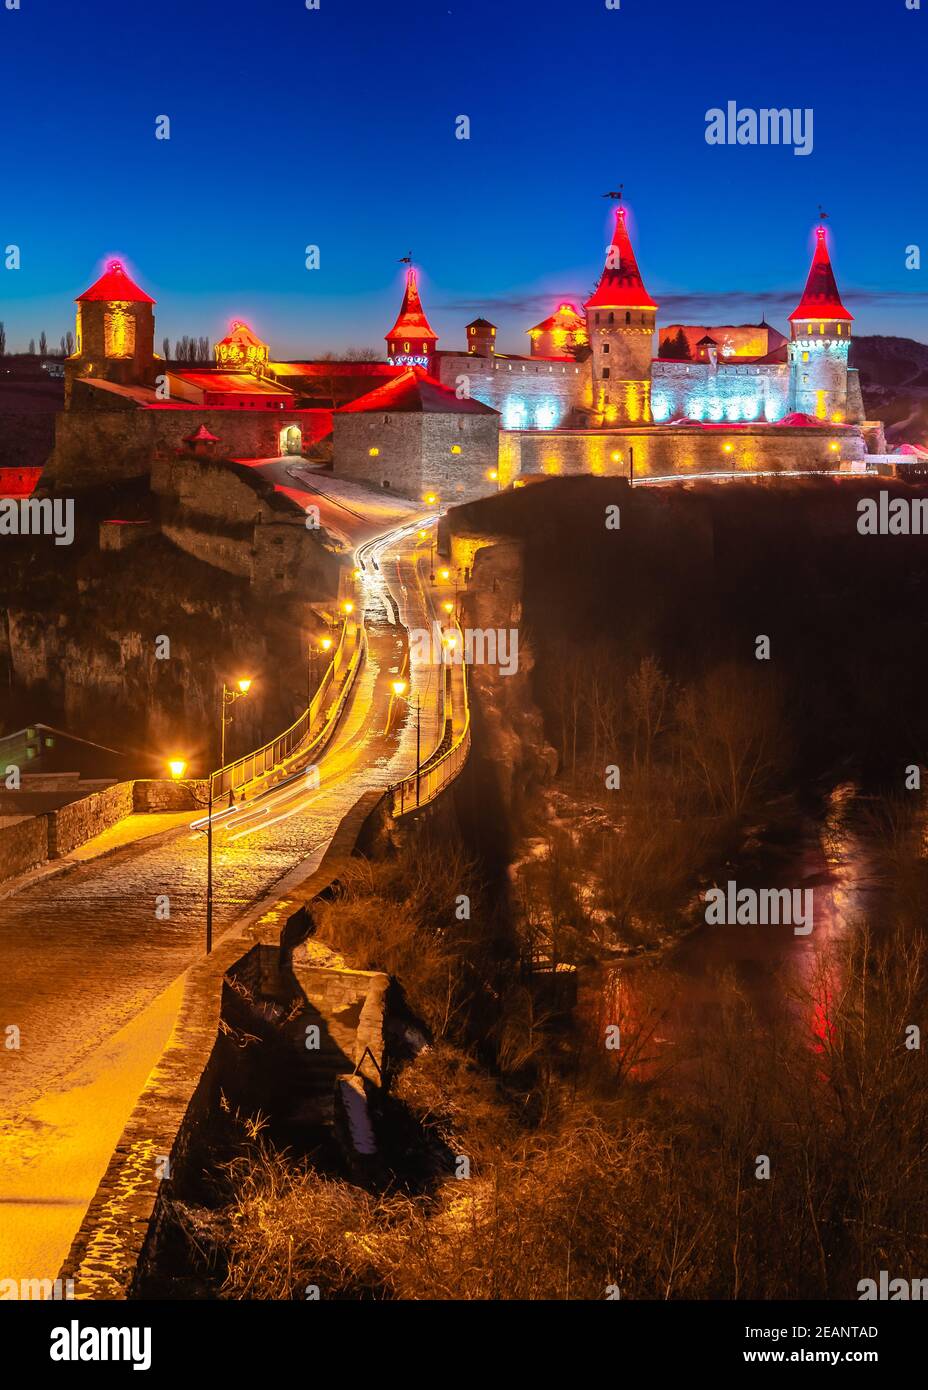 Forteresse de Kamianets-Podilskyi pendant une nuit d'hiver Banque D'Images